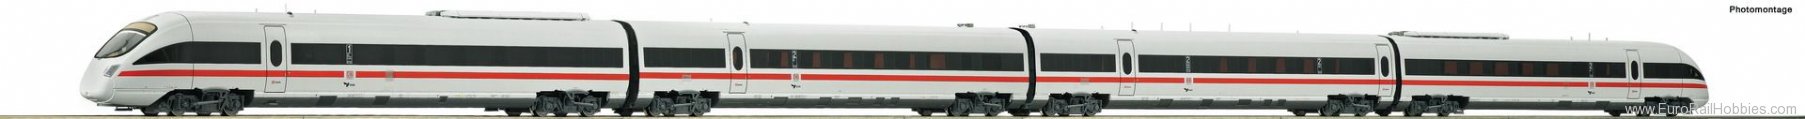 Roco 72106 DSB Diesel multiple unit class 605 (DCC w/Sou